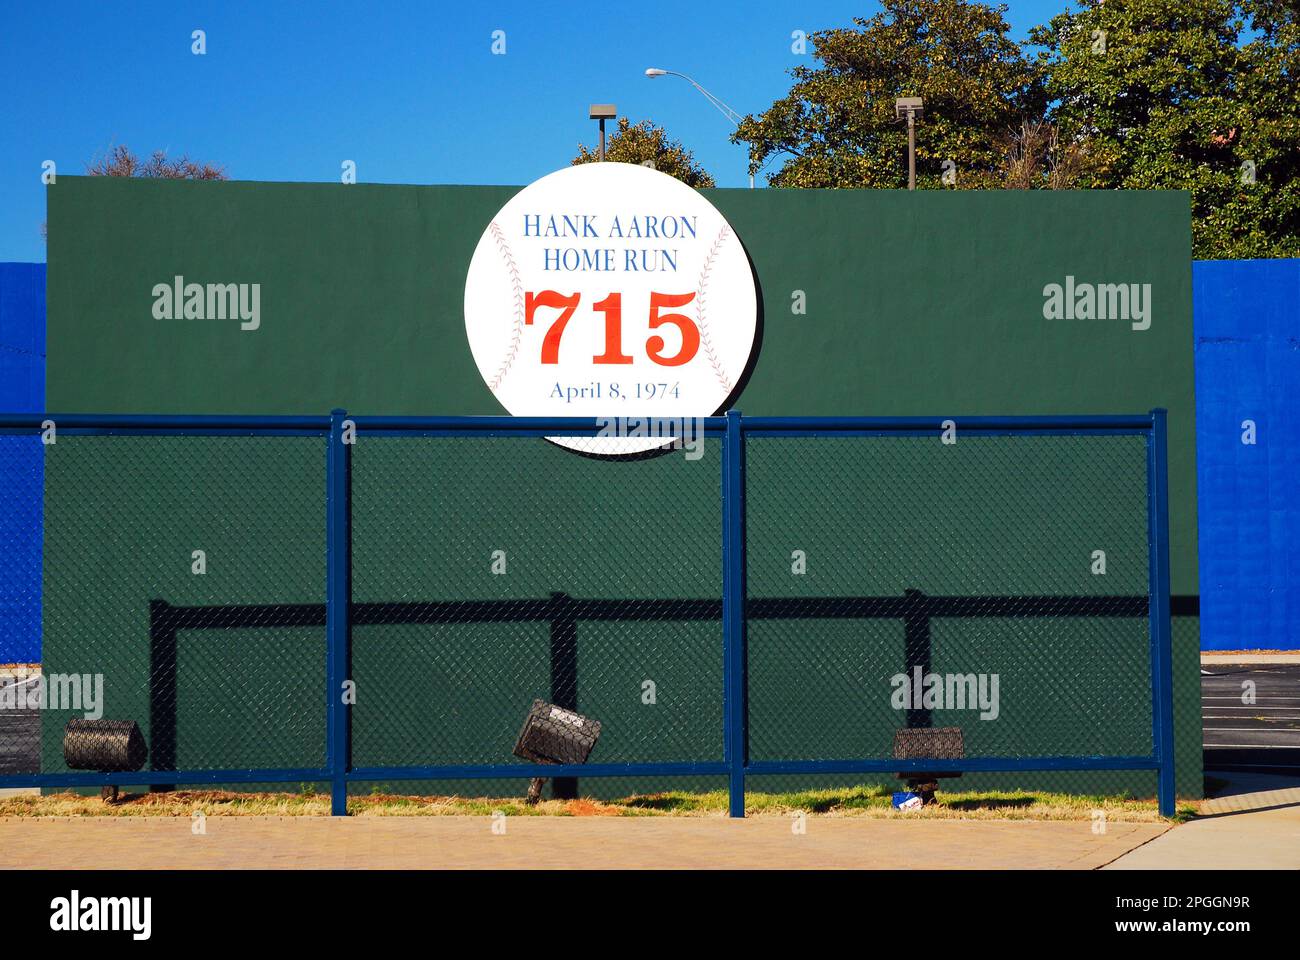 La parete originale dello stadio outfield, dove Hank Aaron ha colpito la sua corsa a casa record del 715, è conservata dalla squadra di baseball degli Atlanta Braves Foto Stock